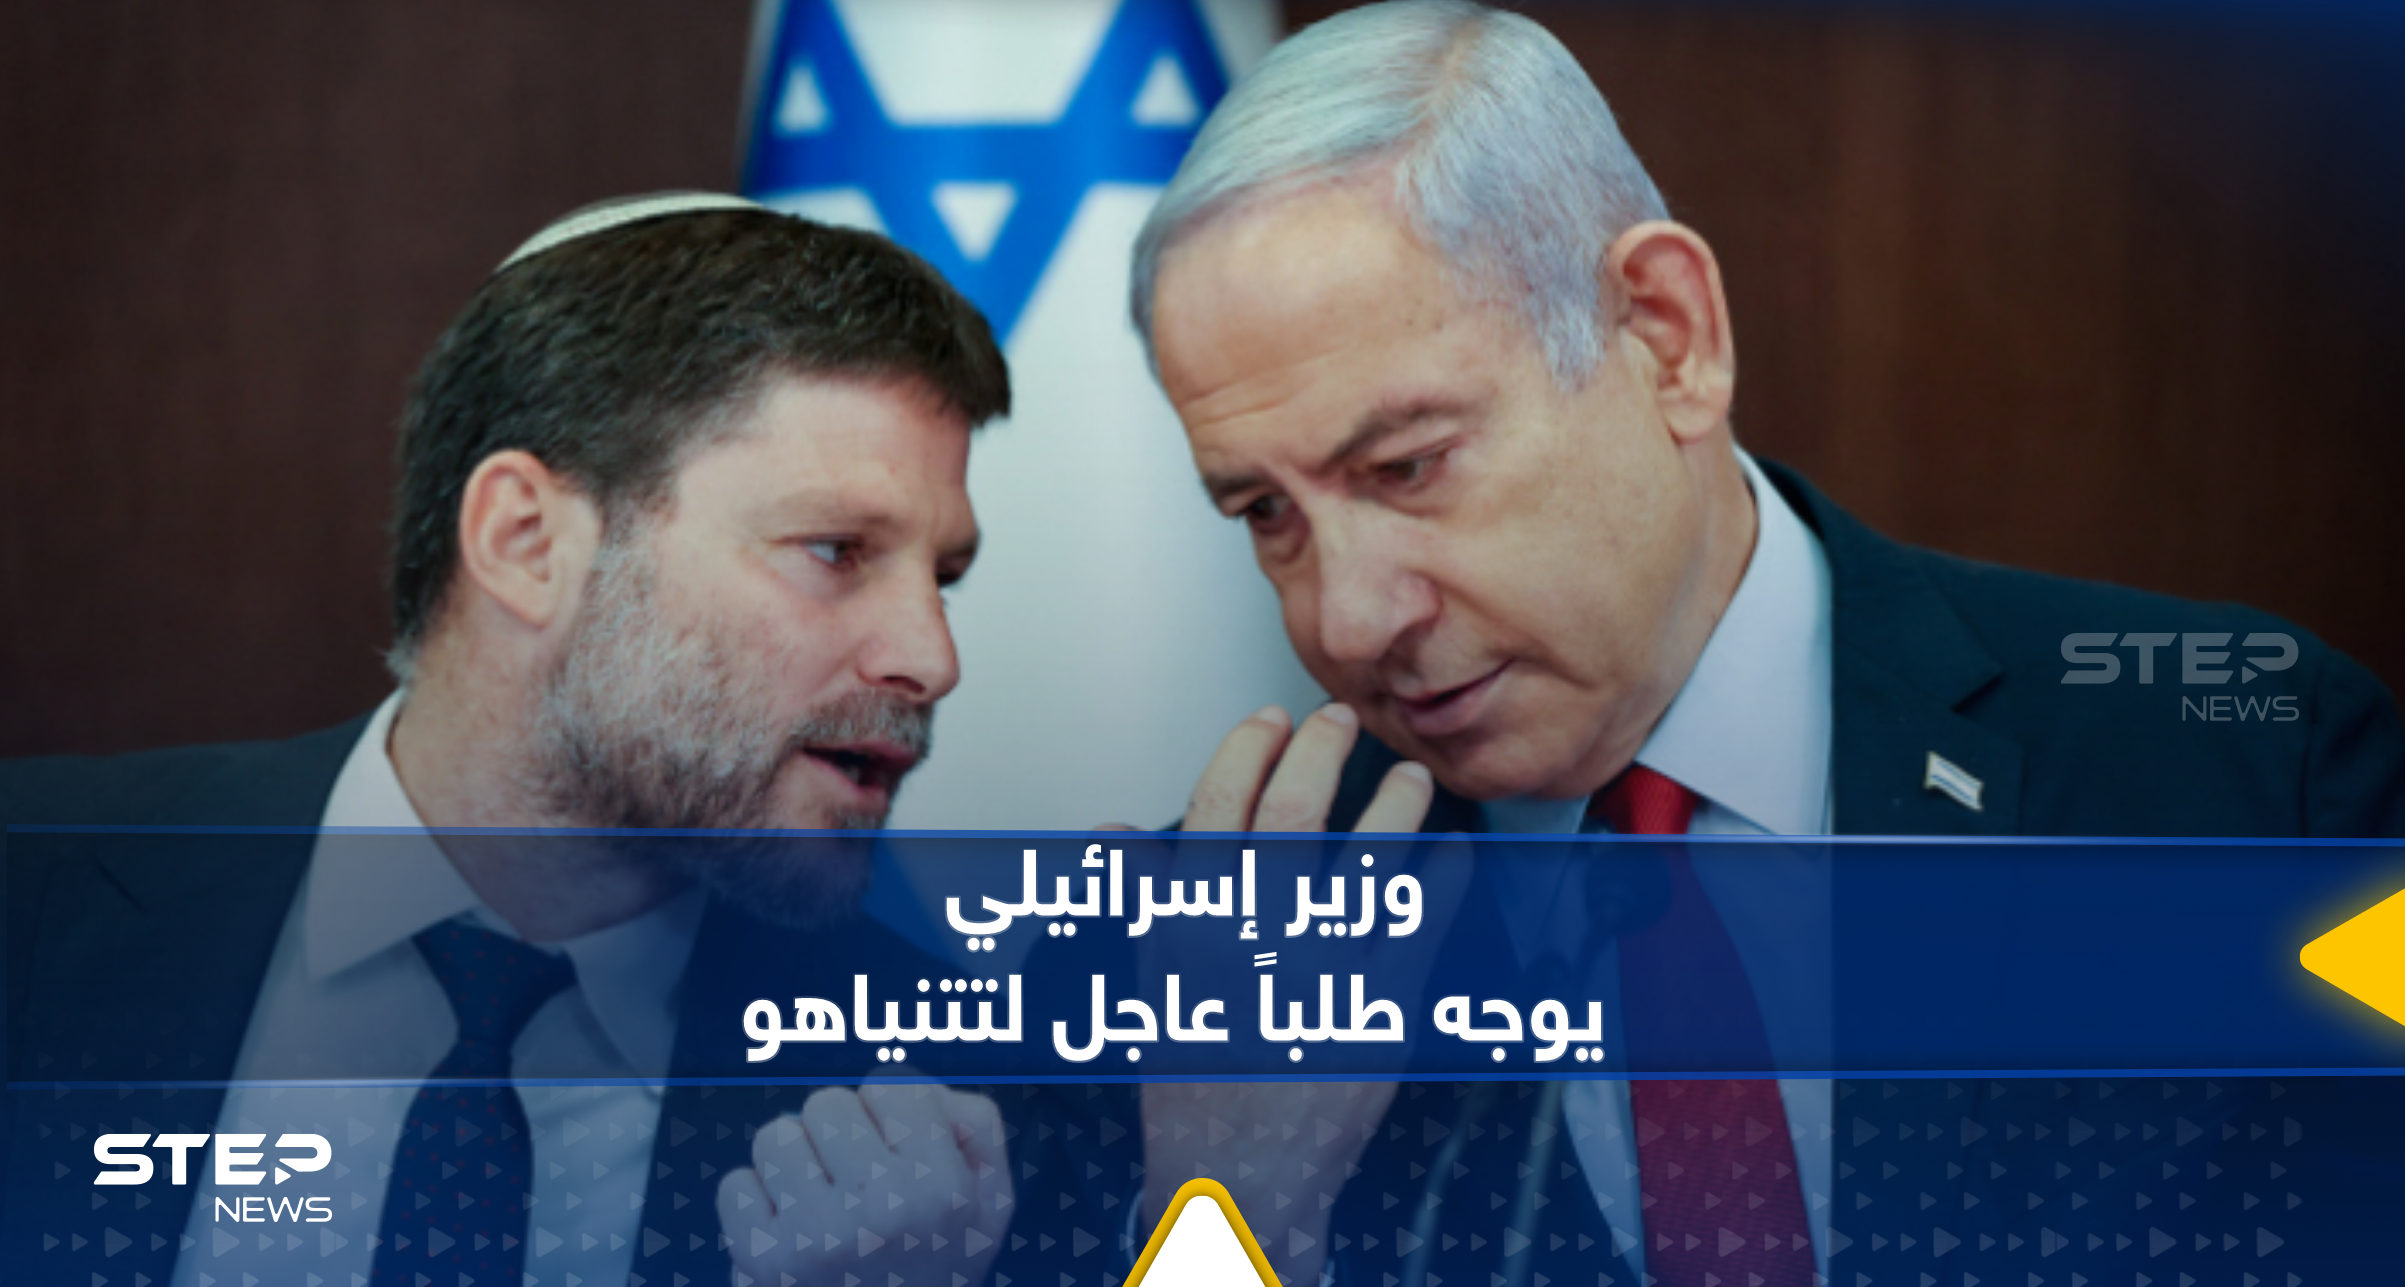 مع انتهاء المهلة واندلاع المعارك.. وزير إسرائيلي يوجه طلباً "عاجلاً" لنتنياهو